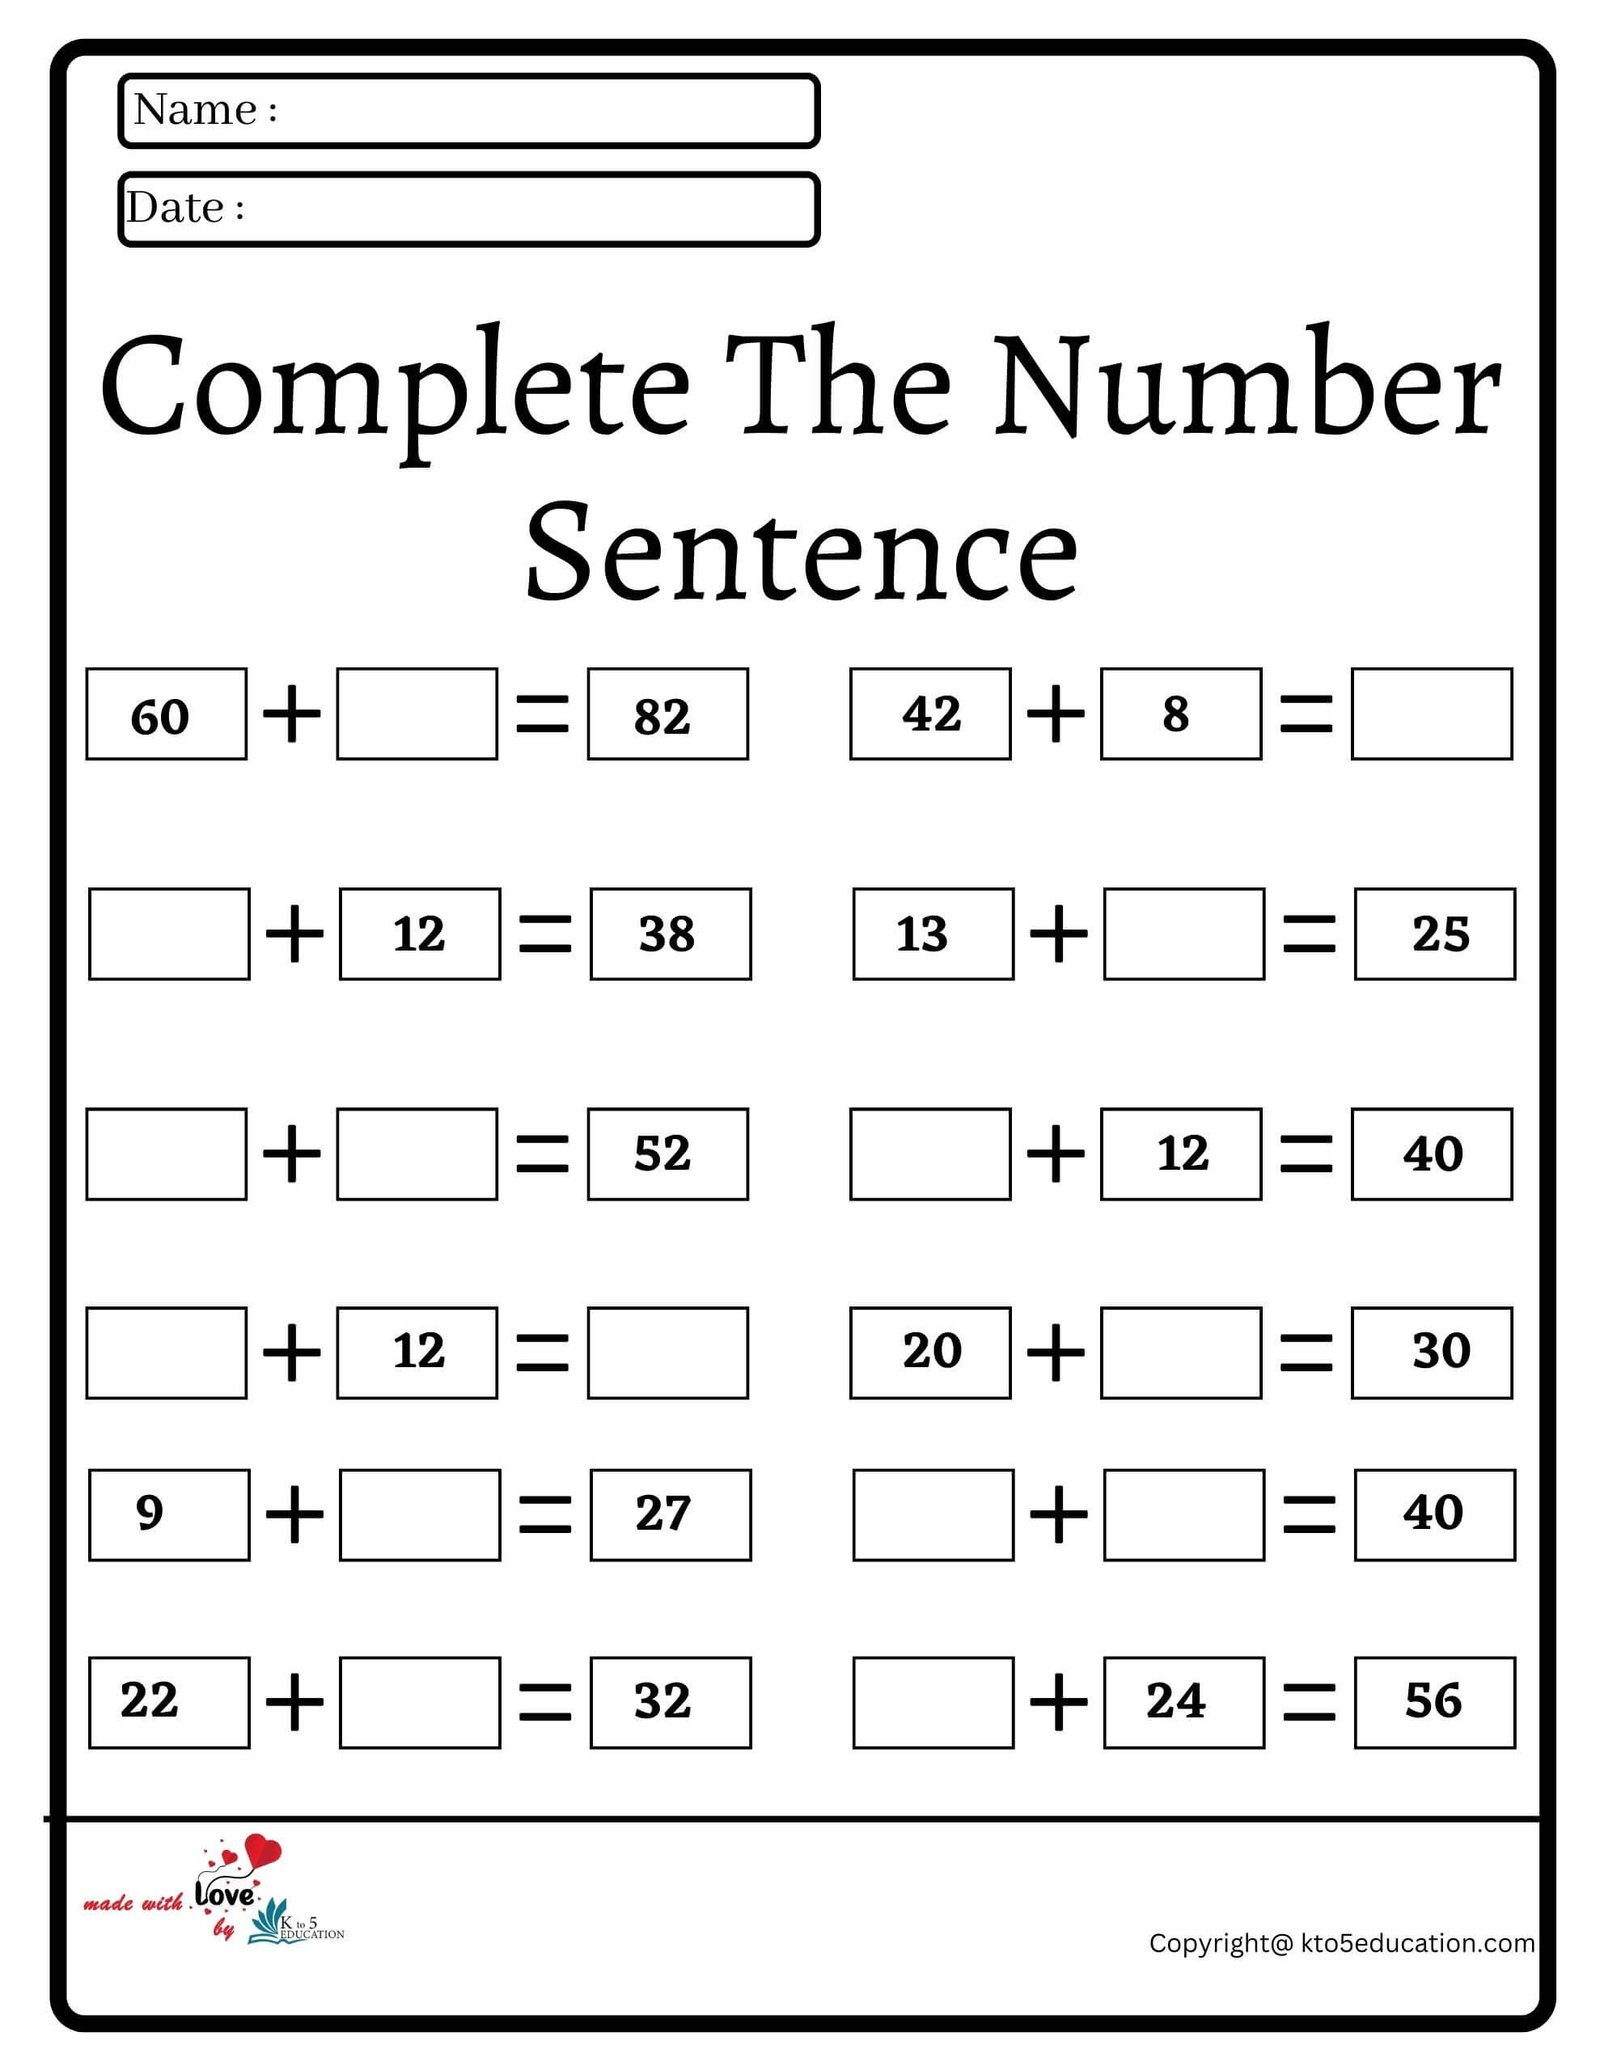 Complete The Number Sentence Worksheet 2